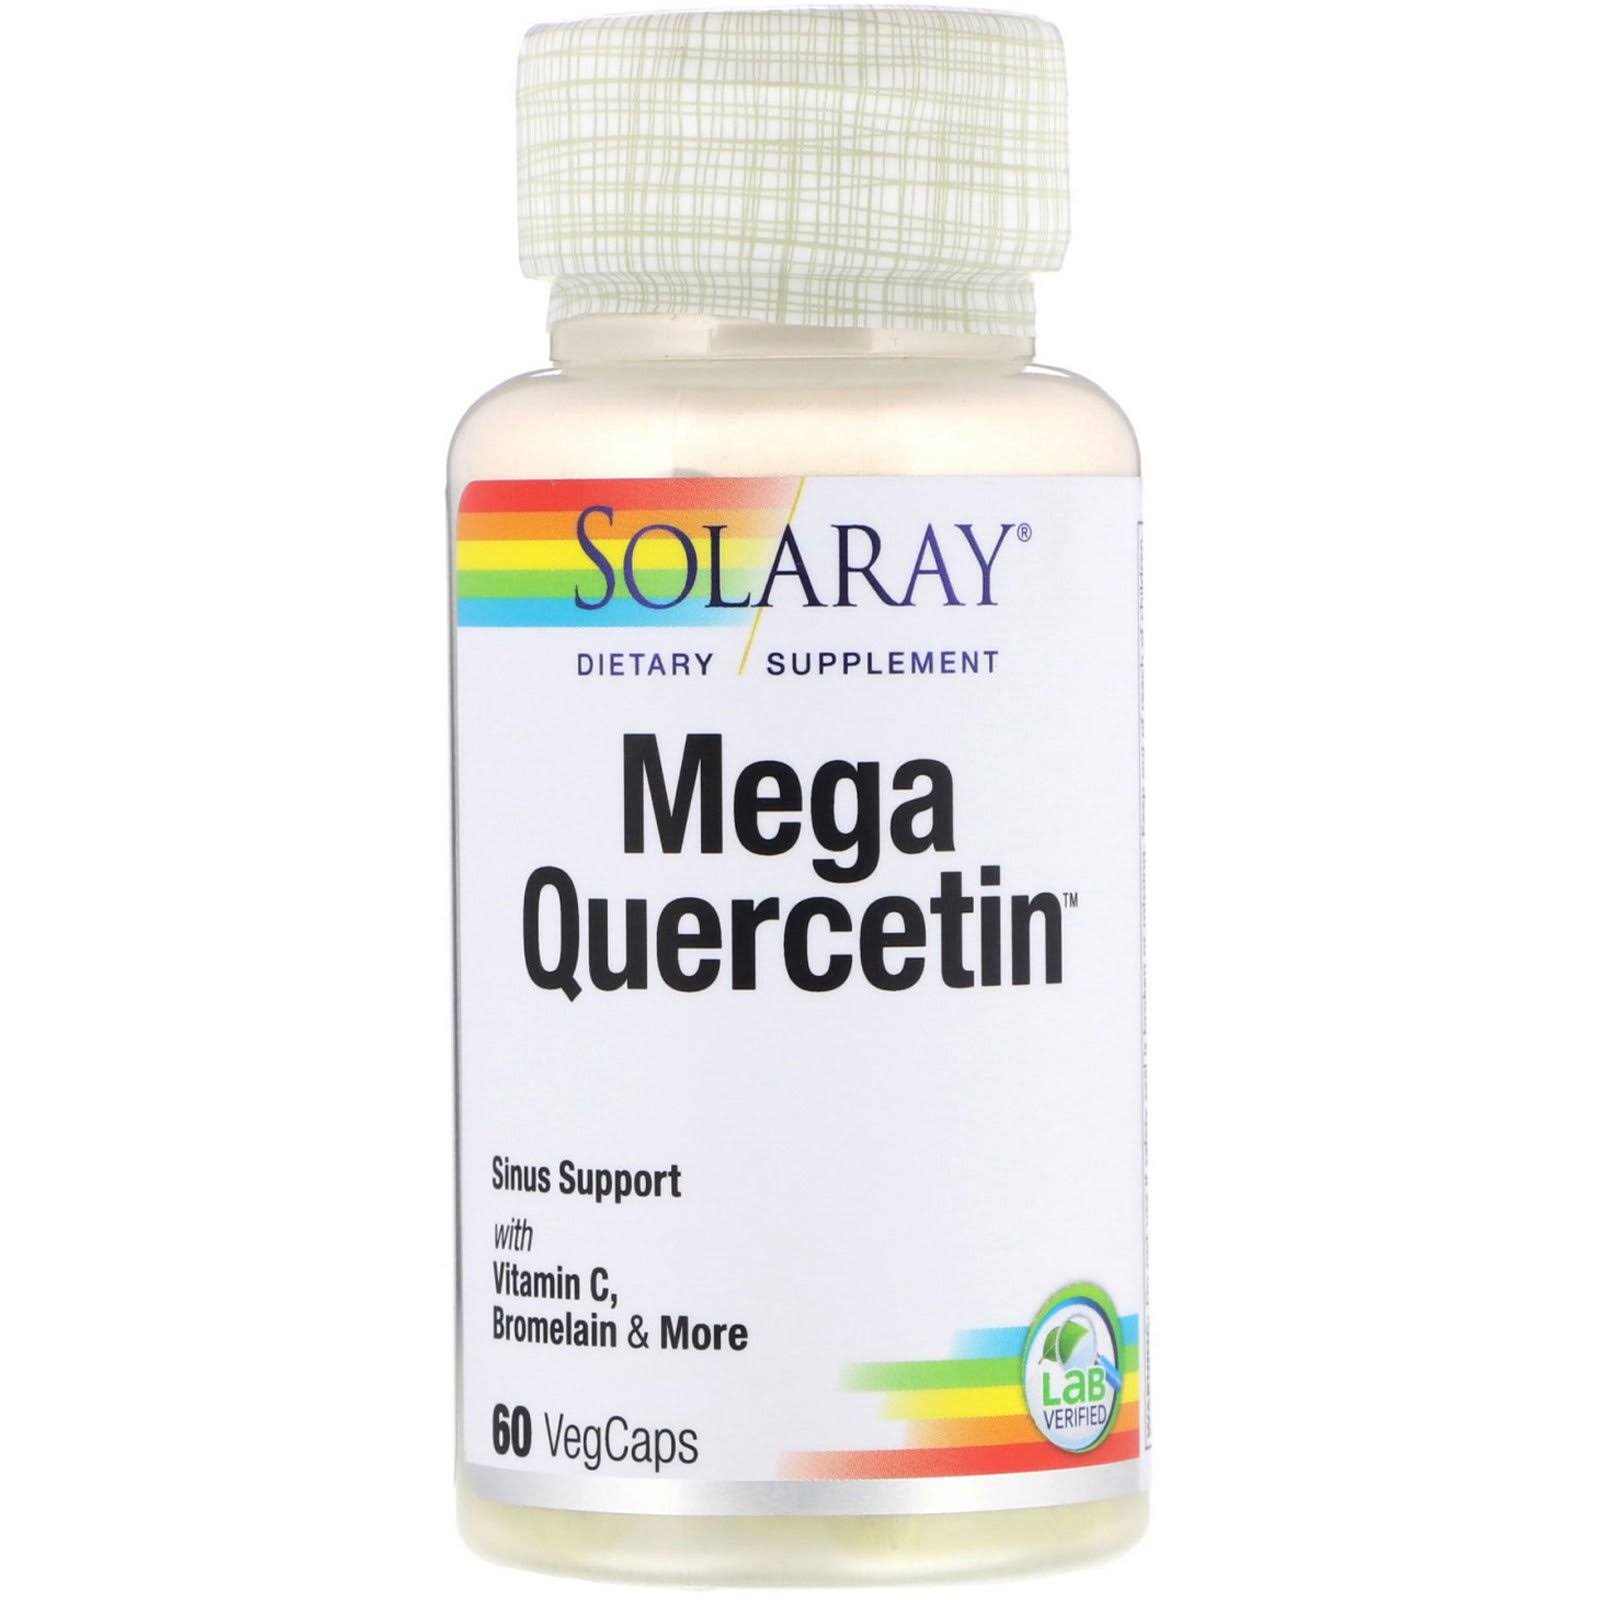 Solaray Mega Quercetin, 60 Caps